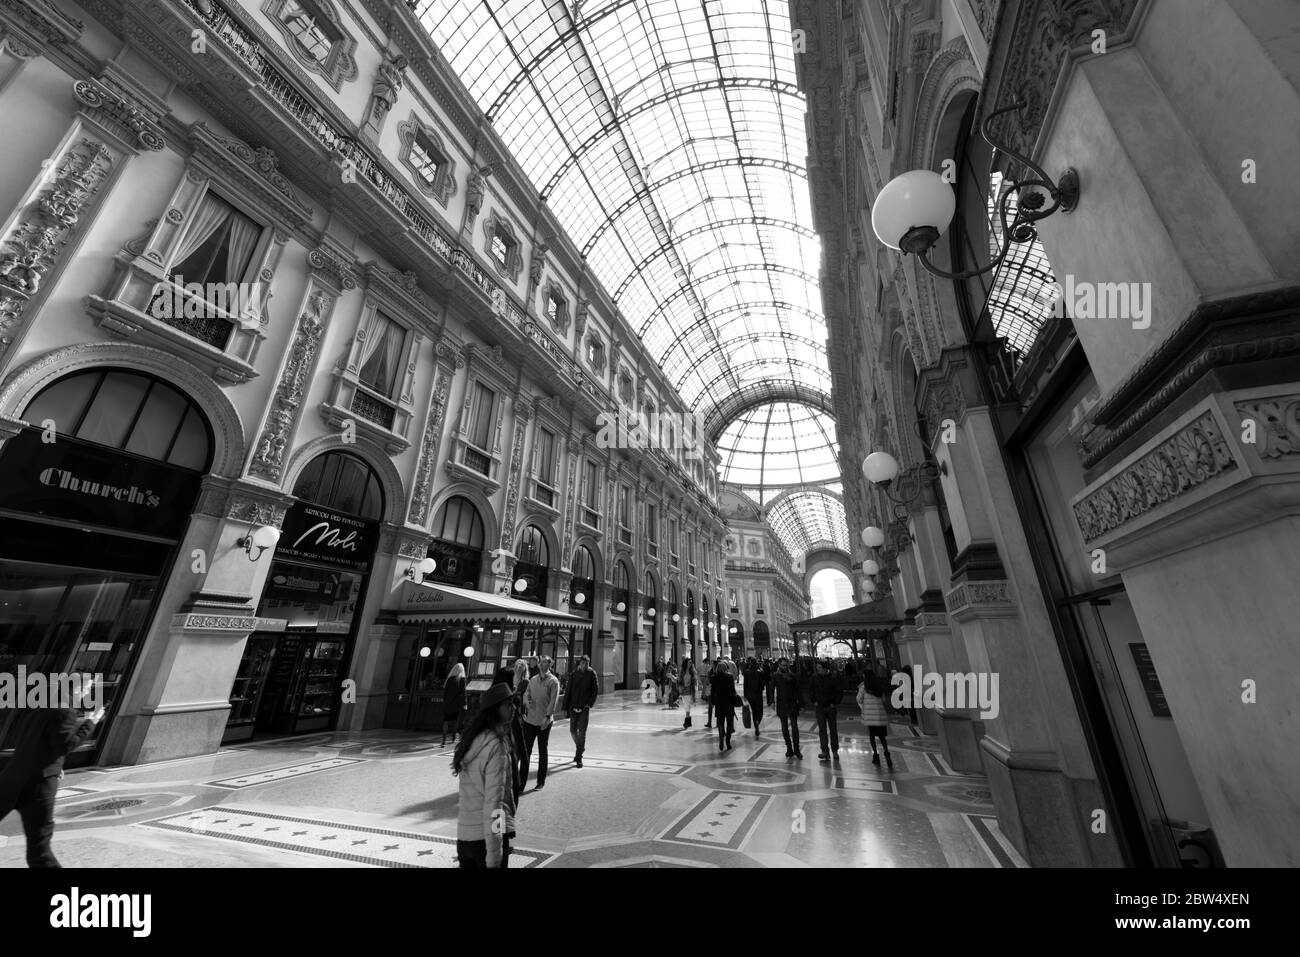 MILÁN, ITALIA - 16, MARZO de 2018: Imagen en blanco y negro del interior de la Galería Vittorio Emanuele II, un antiguo centro comercial en Milán, Italia Foto de stock